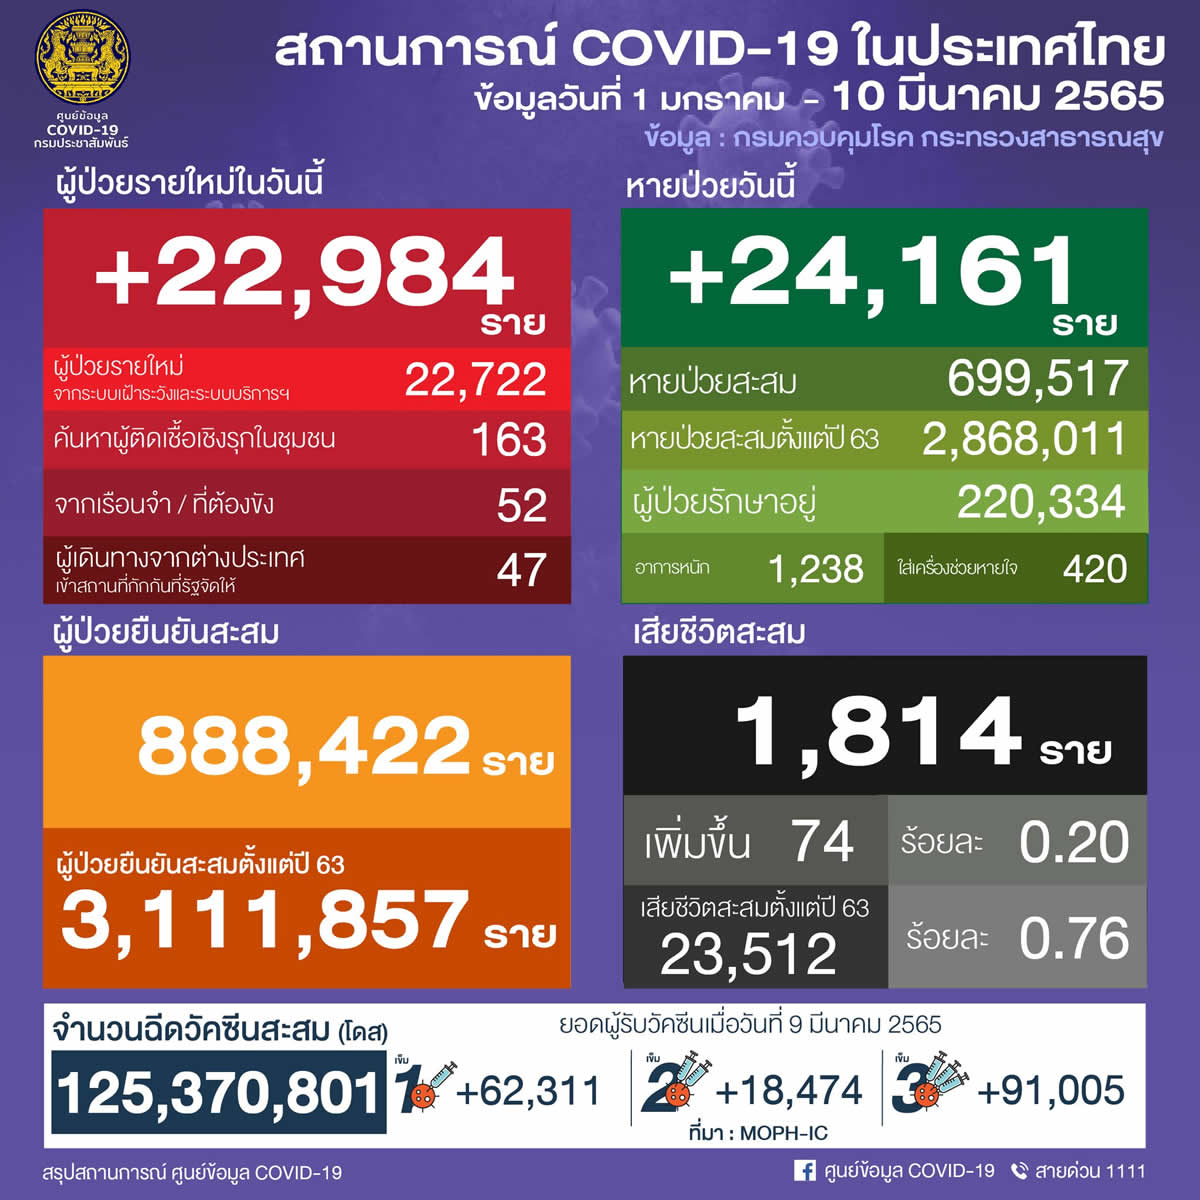 タイ 22,984人陽性 74人死亡／バンコク 3,192人陽性／ナコンシータマラート 1,228人陽性／チョンブリ 978人陽性［2022年3月10日発表］